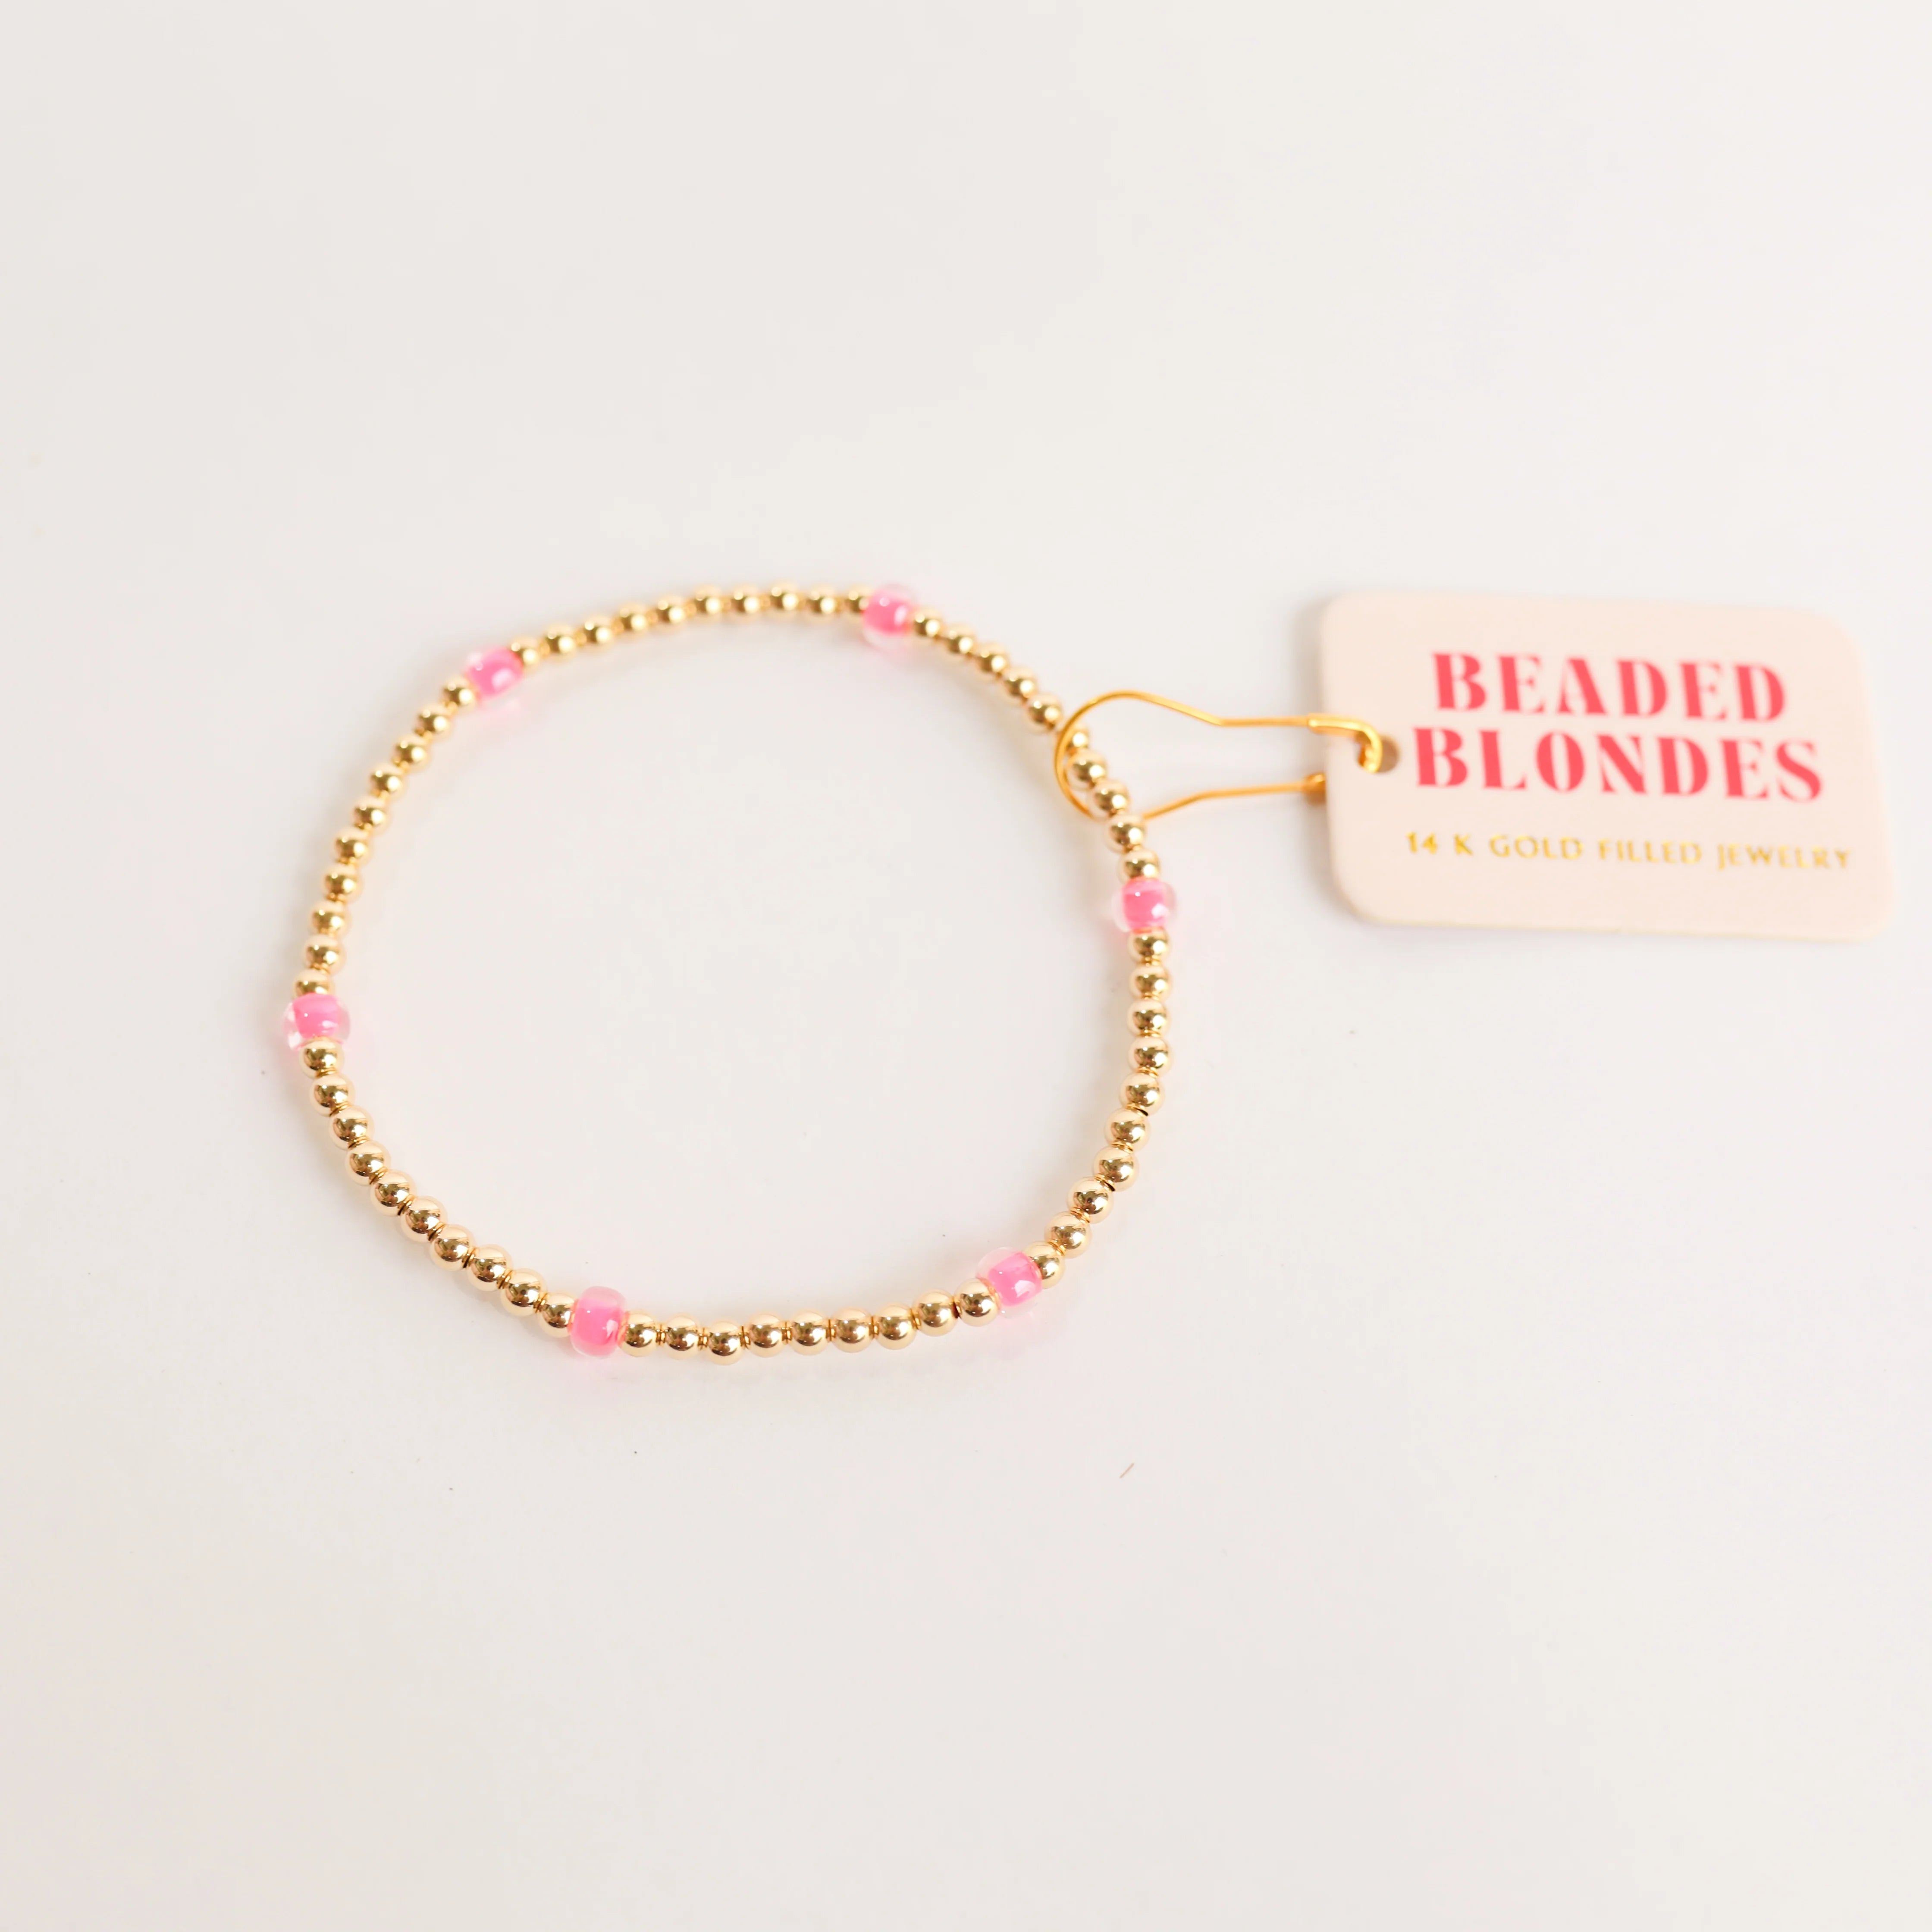 Beaded Blondes | Hot Pink Poppi Bracelet - Giddy Up Glamour Boutique